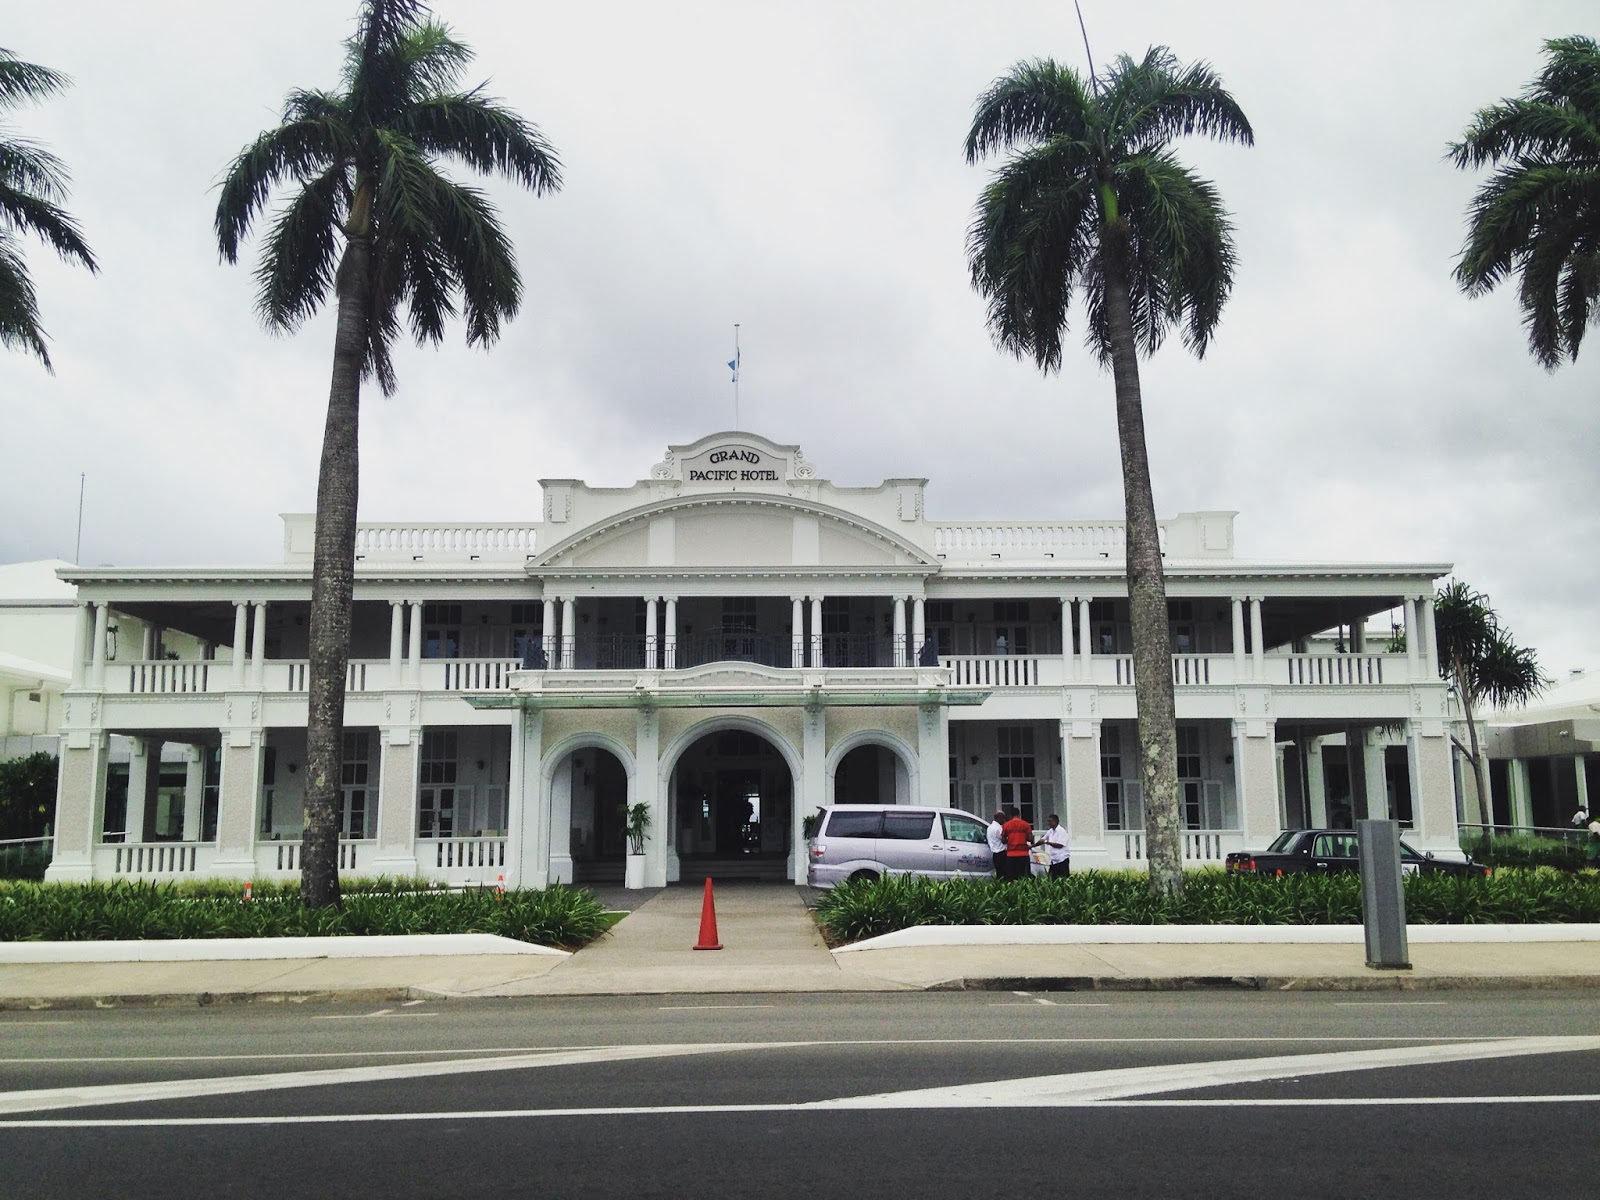 The Grand Pacific Hotel, Suva, Fiji